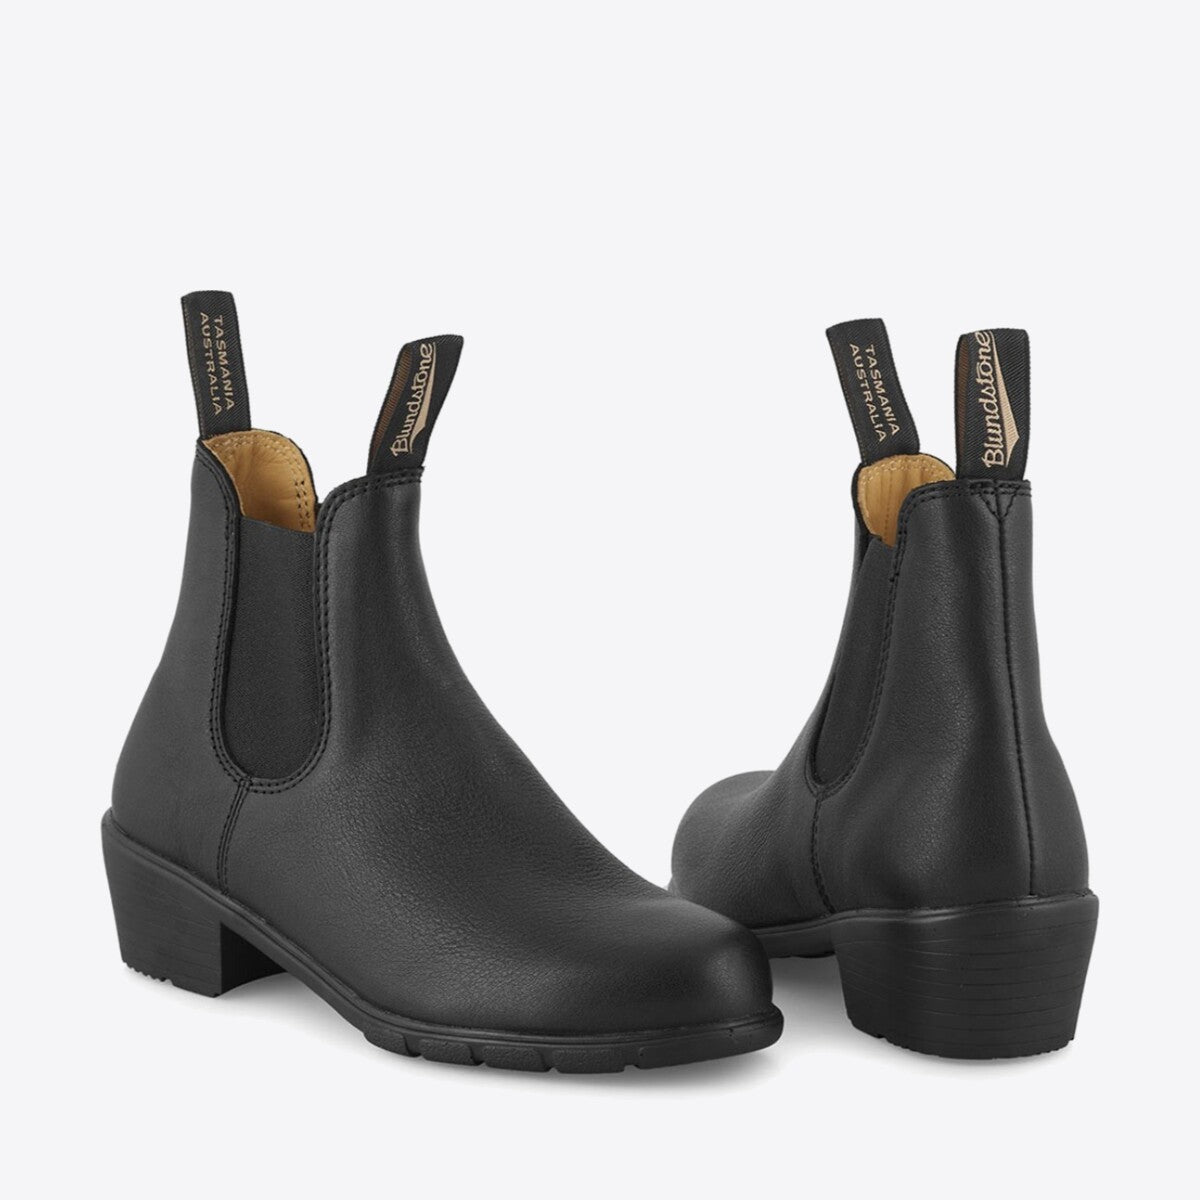 Women's Mid Heels Boots | Famous Footwear Australia